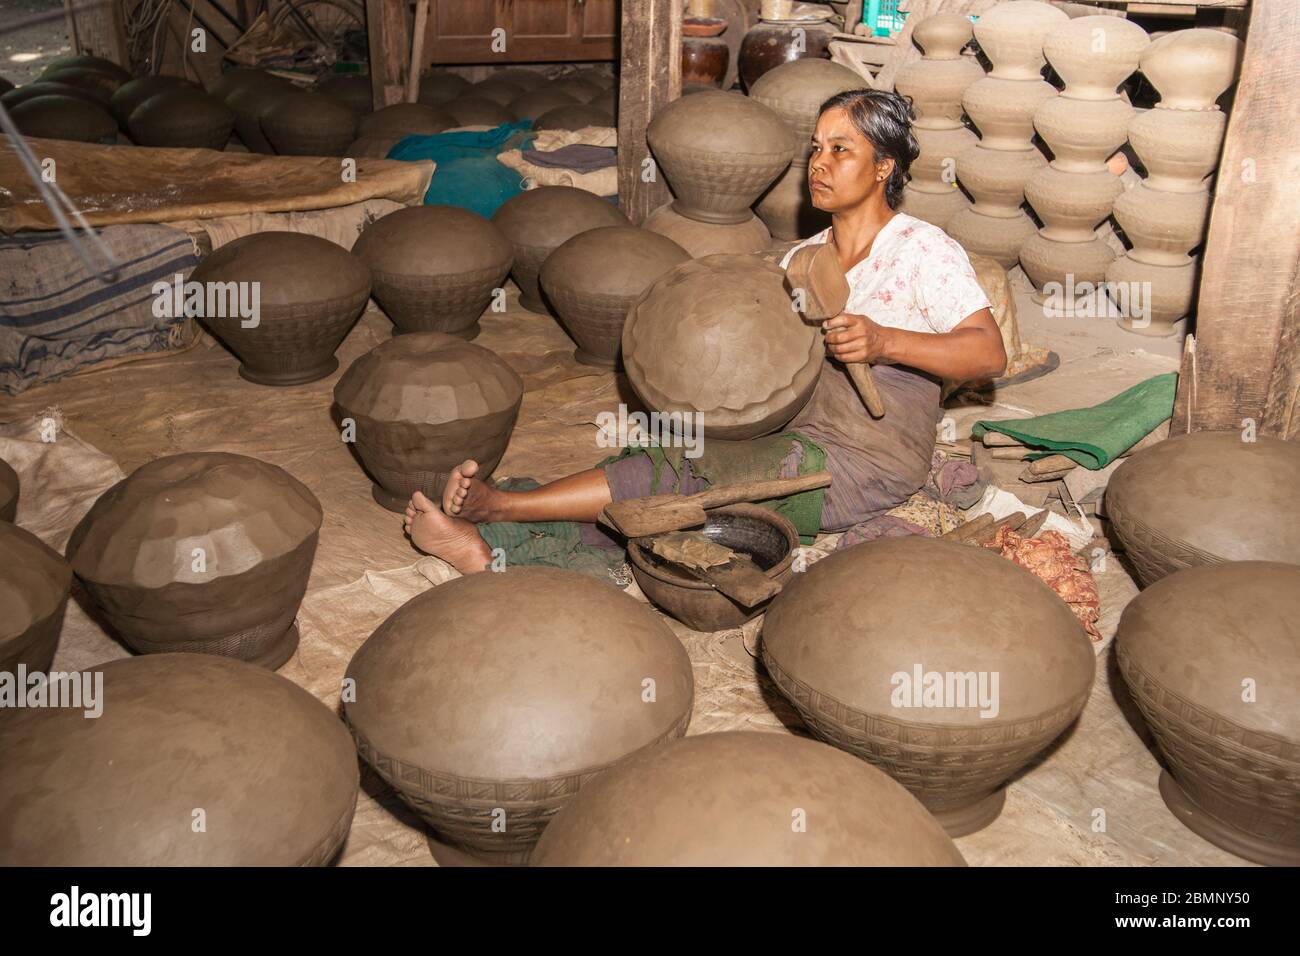 Yandabo Myanmar - octobre 28 2013; femme avec un maillet en bois assis sur le plancher finissant l'urne d'argile dans une usine de village éloignée. Banque D'Images